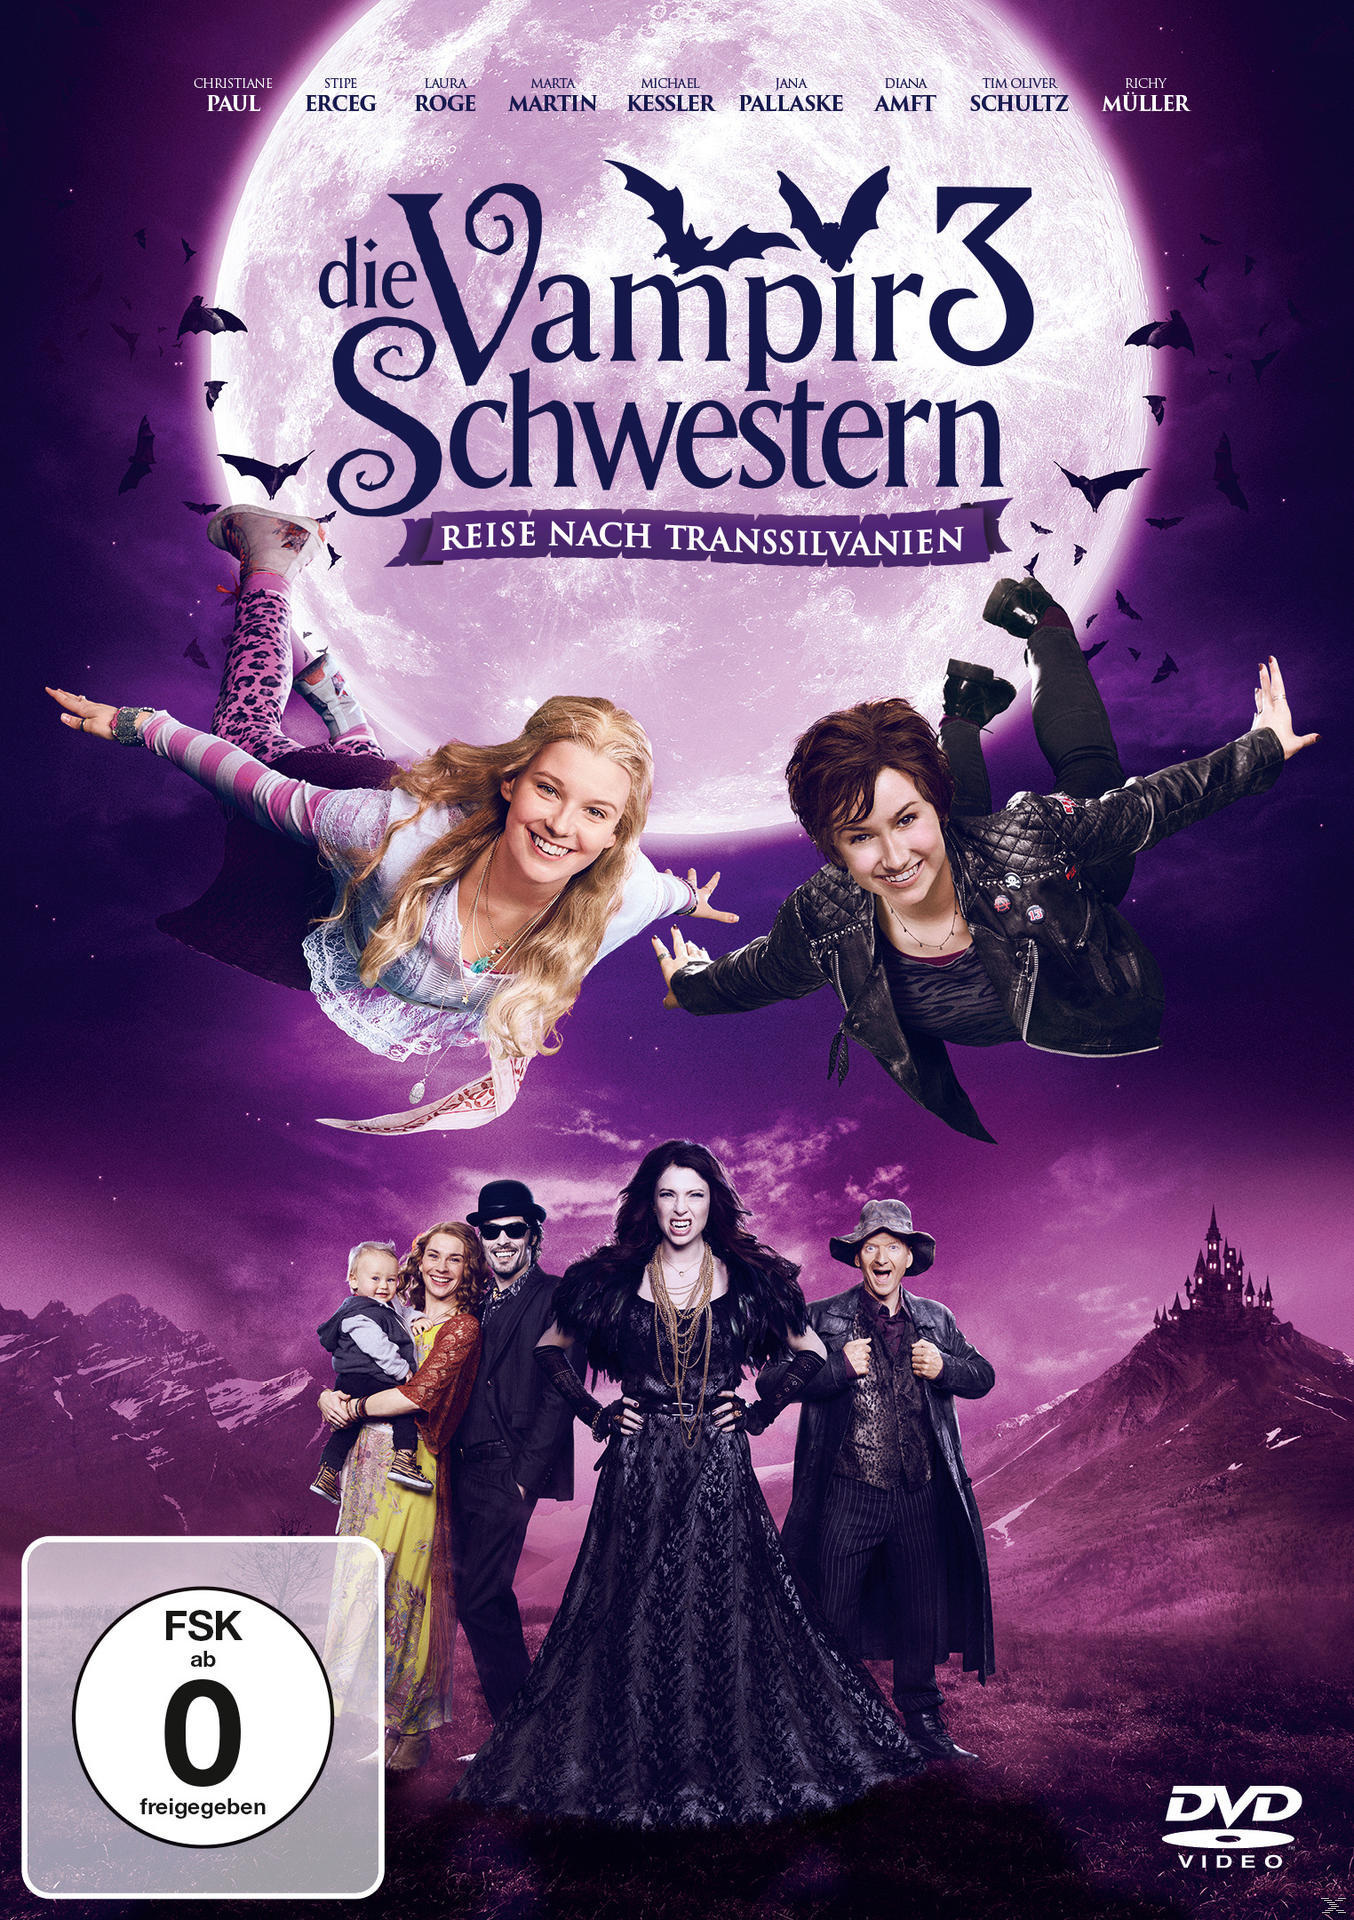 Die Vampirschwestern 3 - Reise DVD Transsilvanien nach